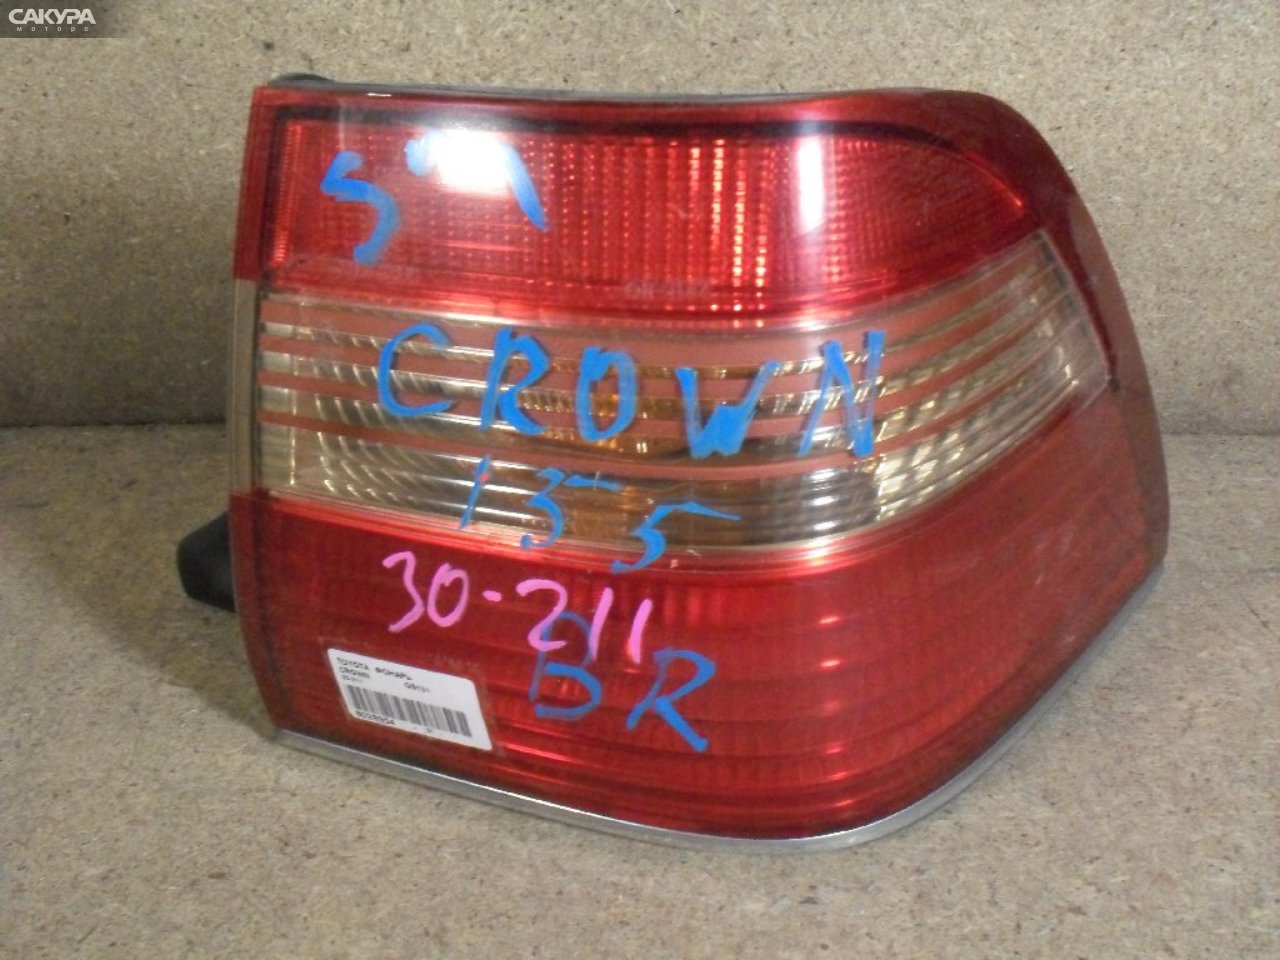 Фонарь стоп-сигнала правый Toyota Crown GS151 30-211: купить в Сакура Абакан.